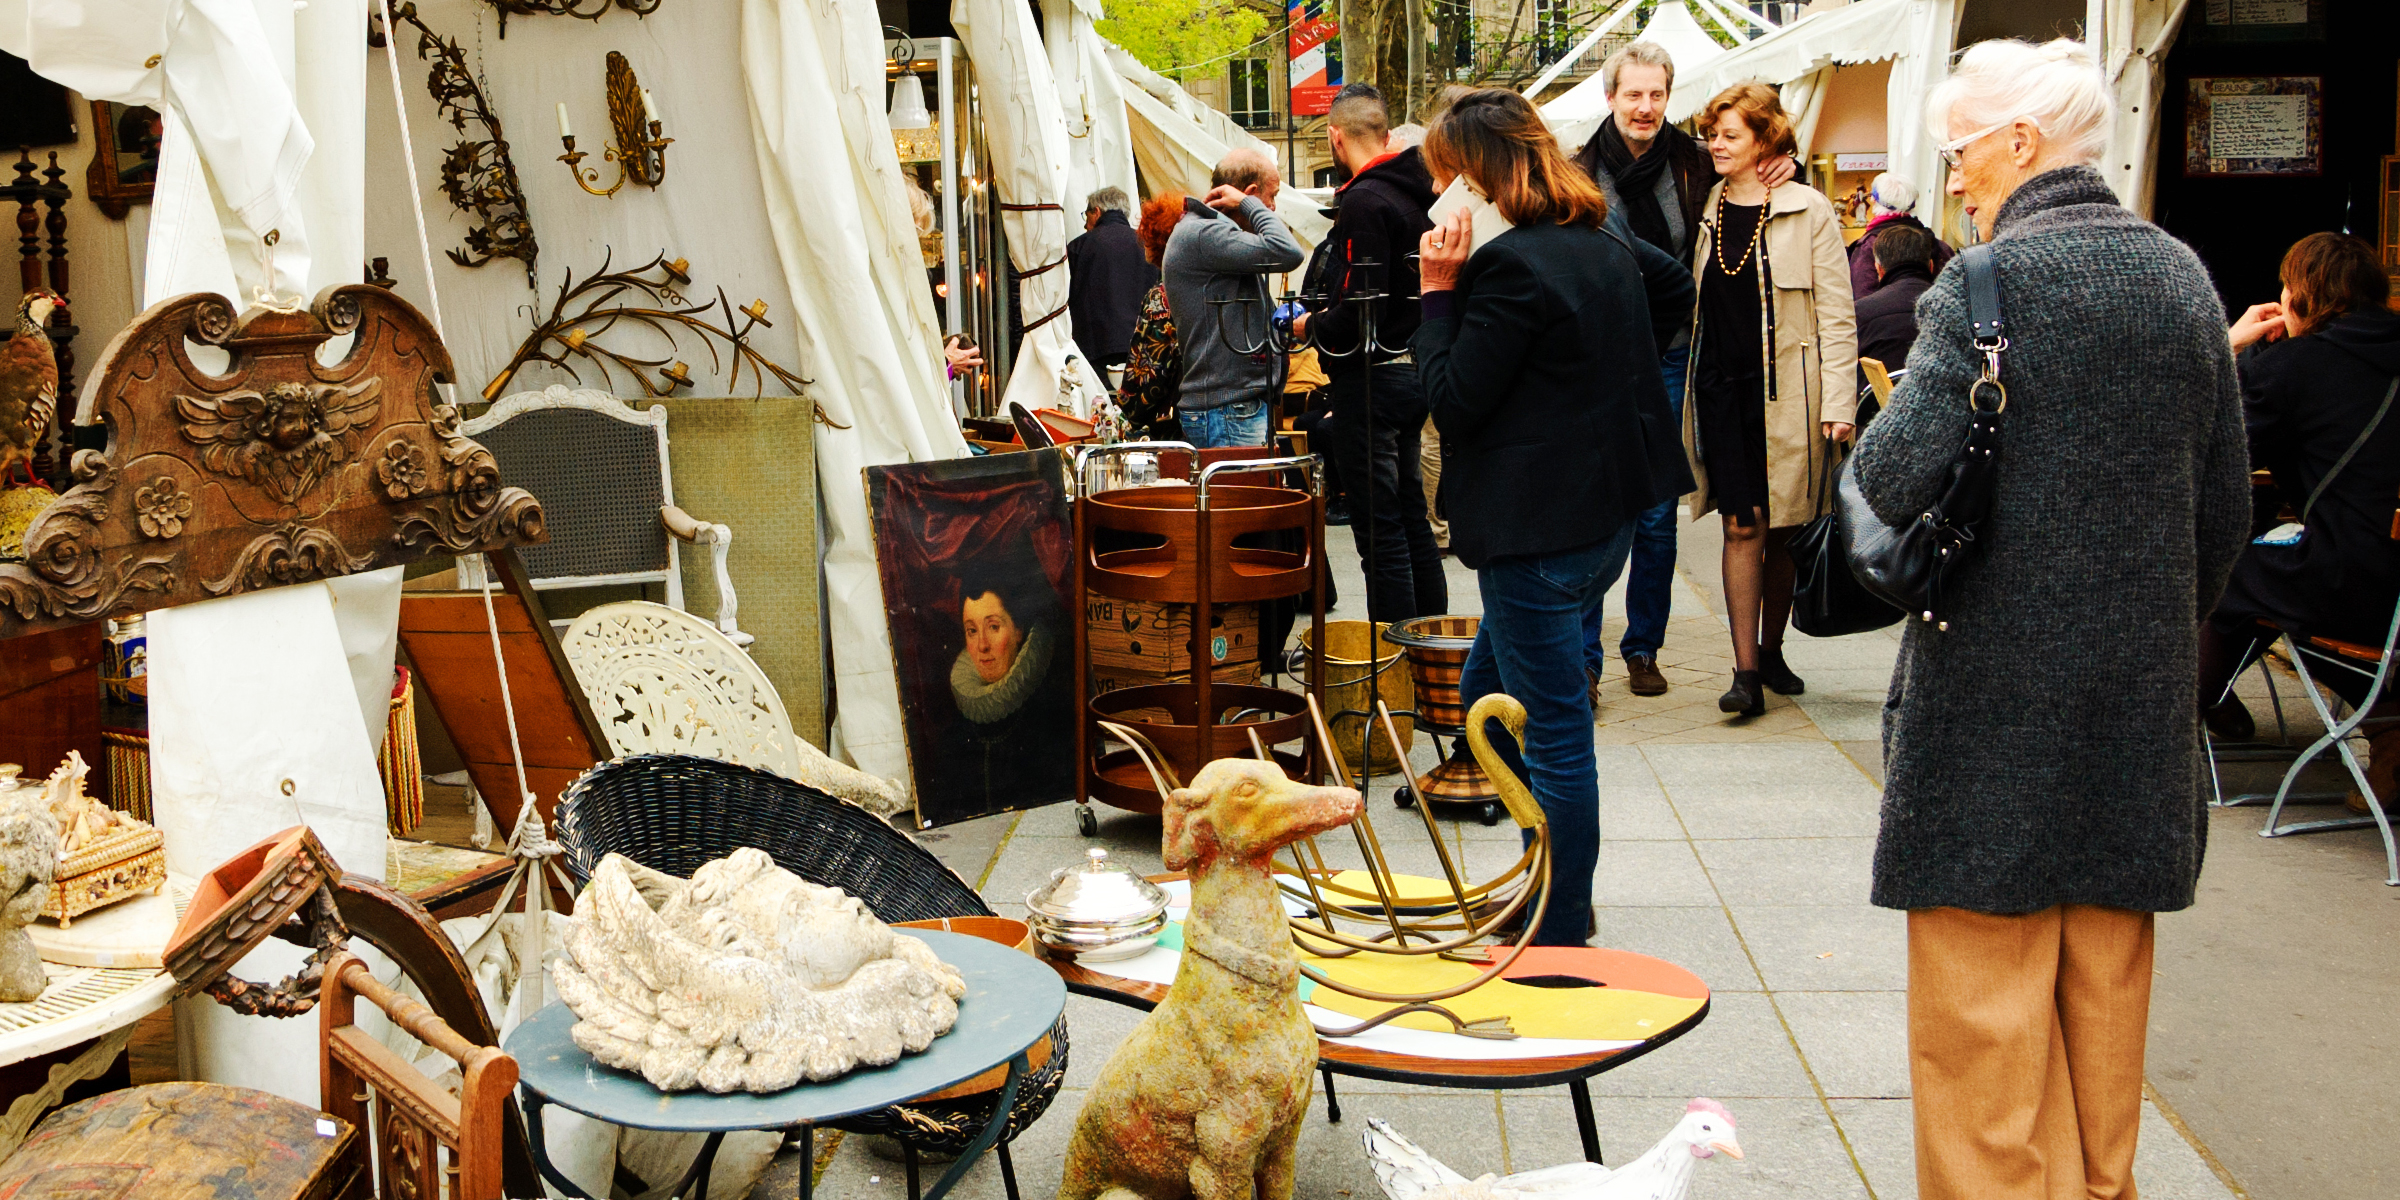 People at a flea market | Source: Shutterstock